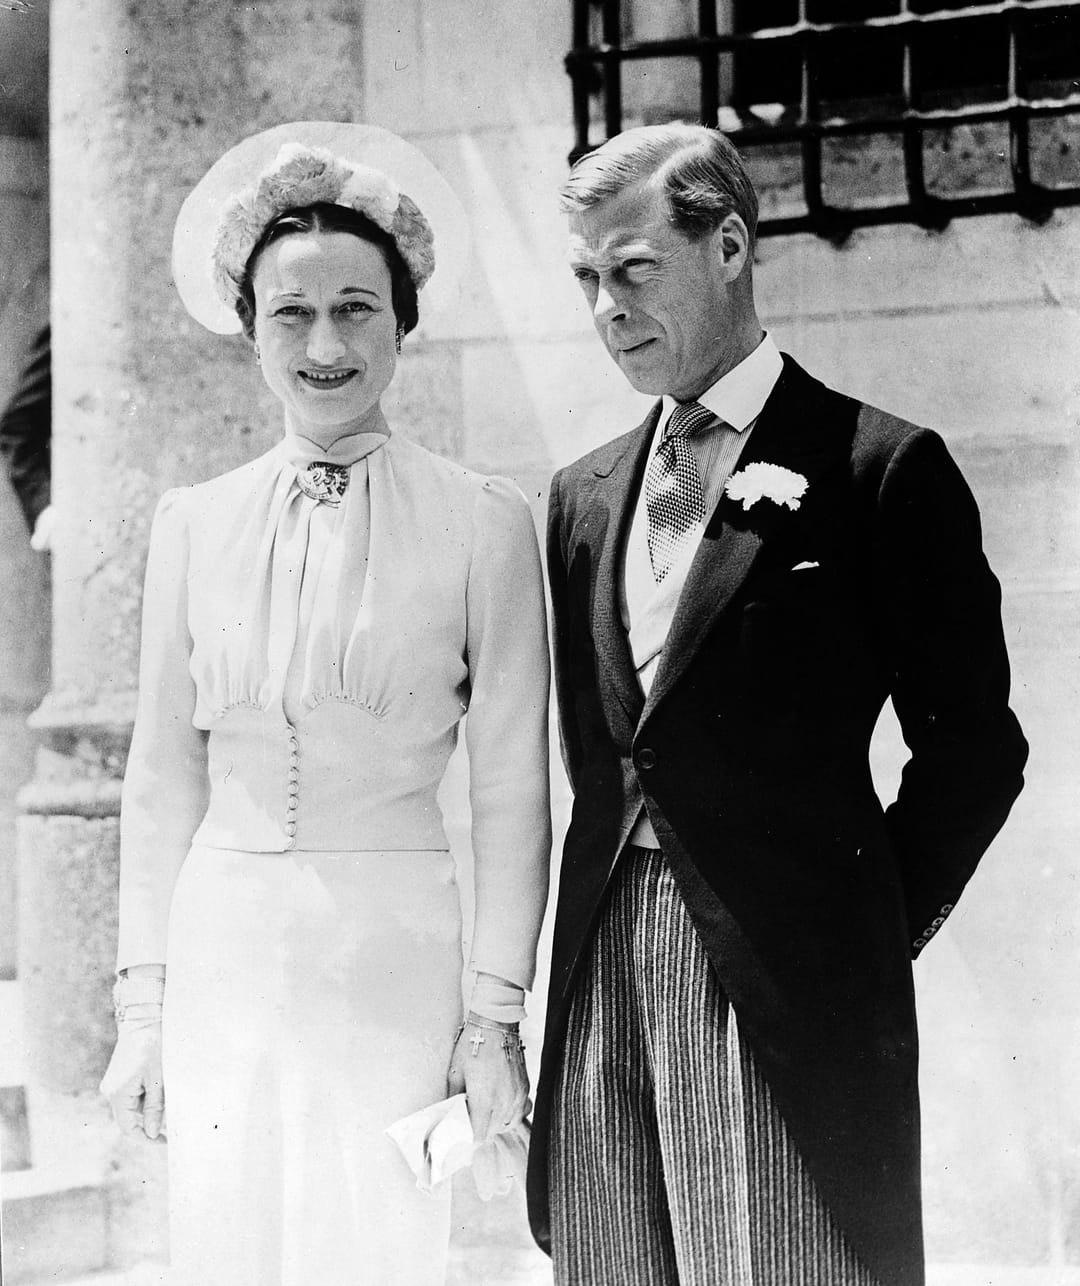 Le 3 juin 1937, le duc de Windsor épouse Wallis Simpson